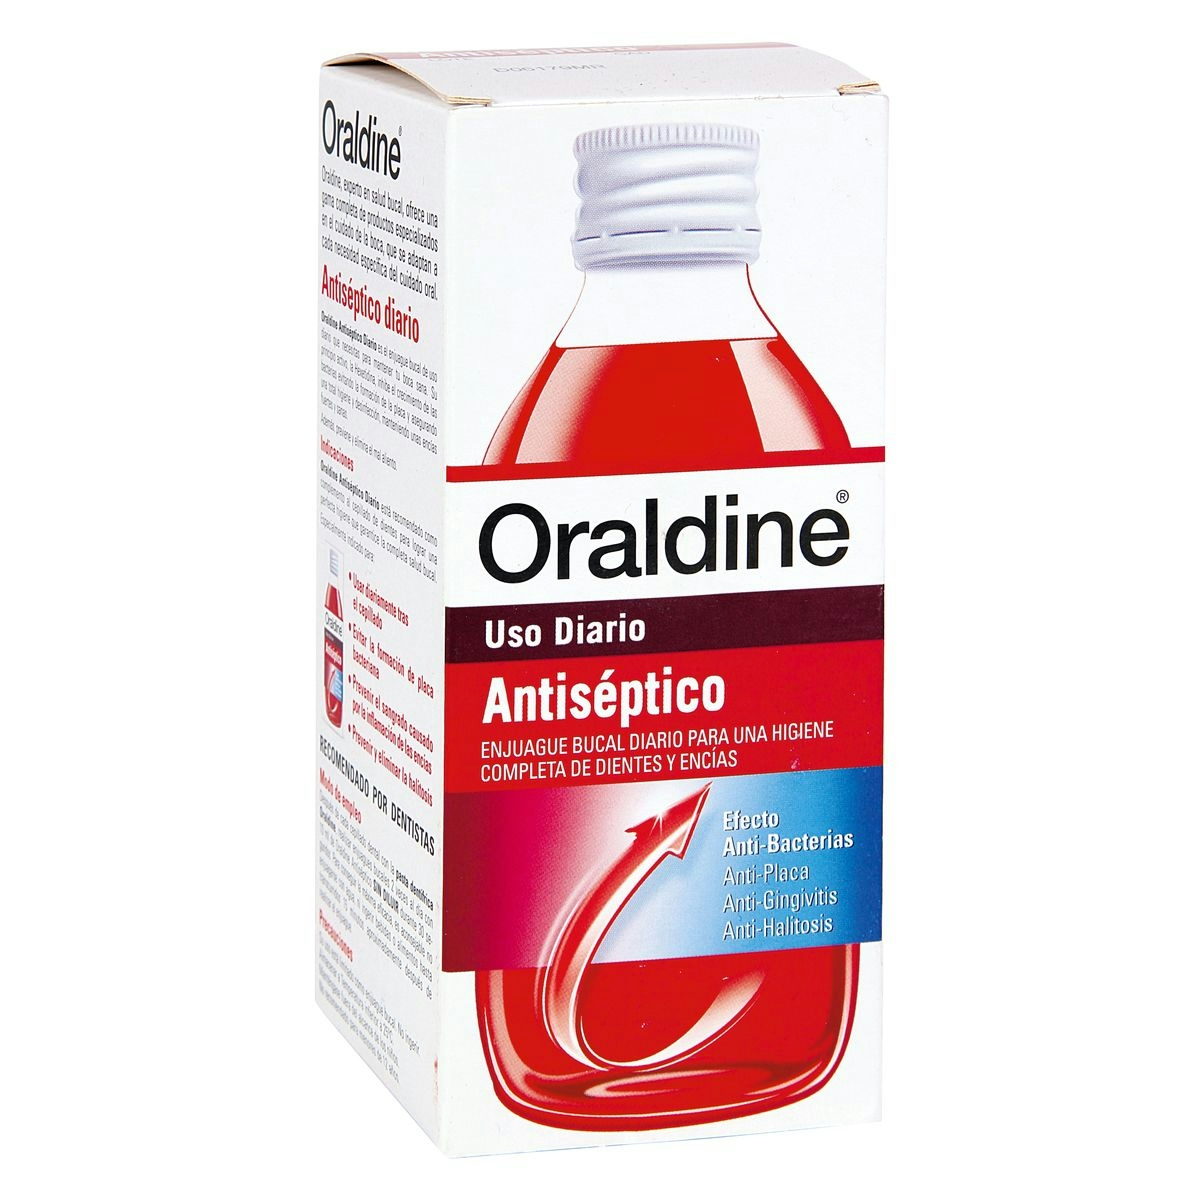 Oraldine Antiseptico 200ml colutorio